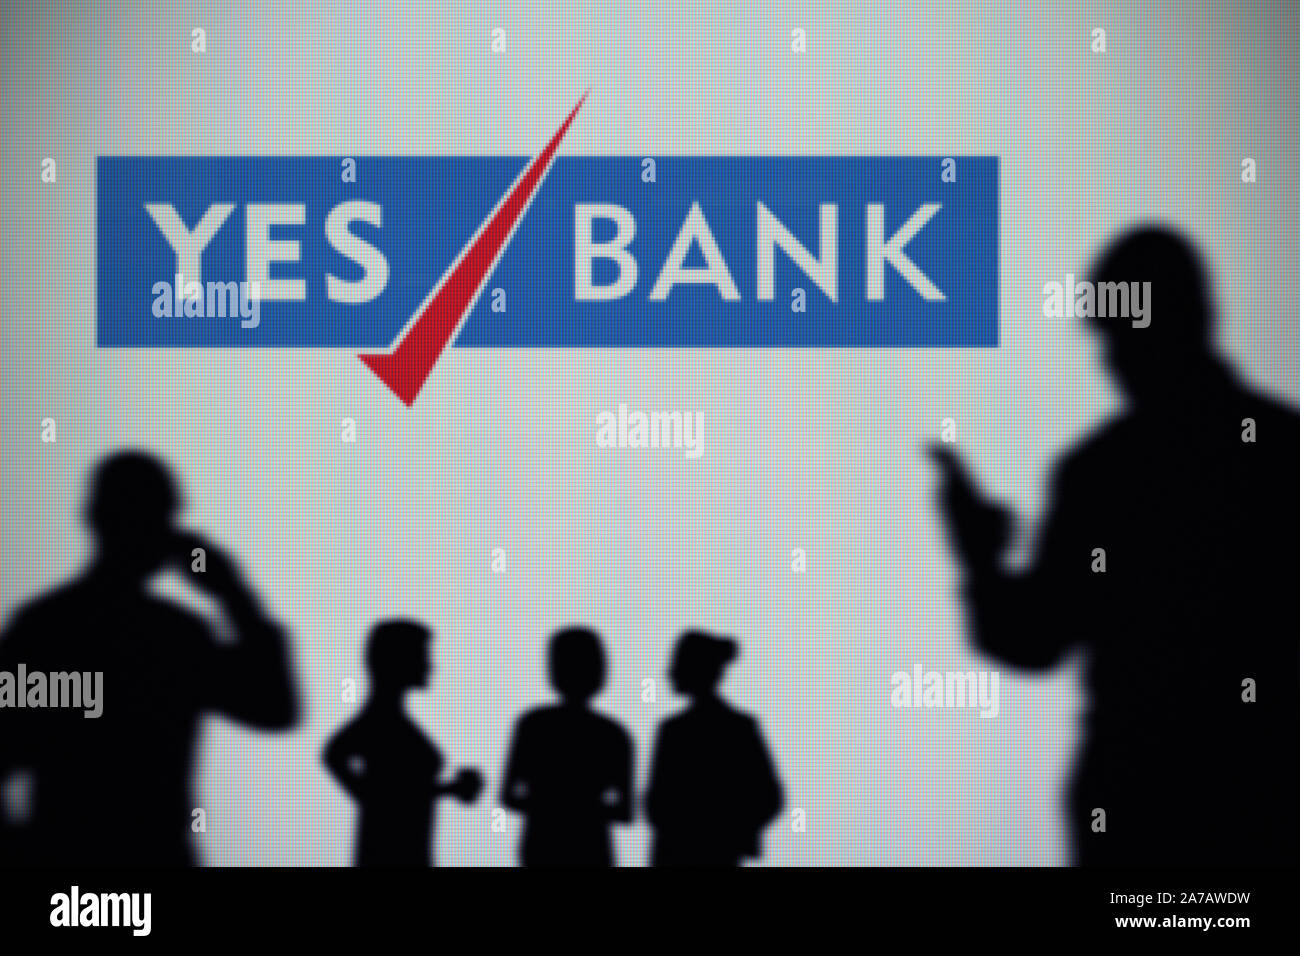 Oui le logo de la Banque est vu sur un écran LED à l'arrière-plan tandis qu'une silhouette personne utilise un smartphone (usage éditorial uniquement) Banque D'Images